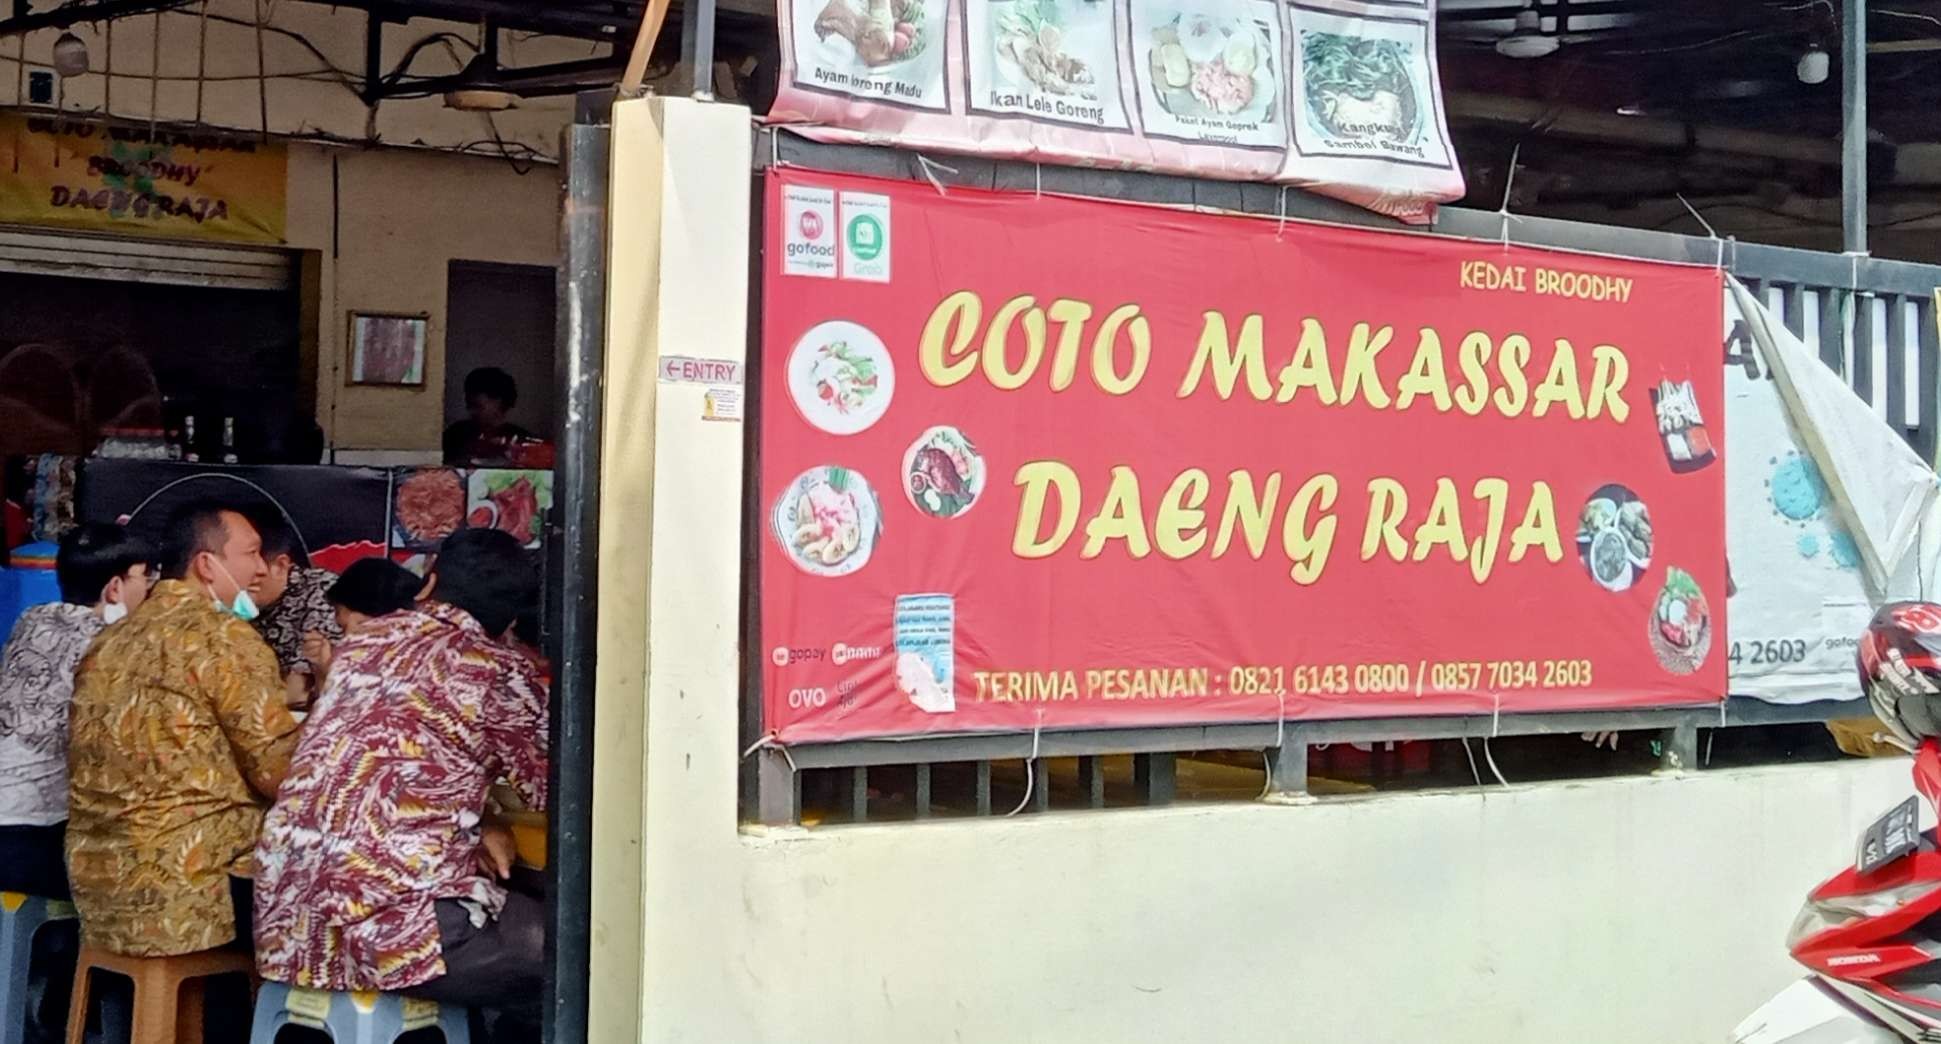 Kedai Coto Makassar Daeng Raja di kawasan Slipi, Jakarta Barat. (Foto: Asmanu Sudharso/Ngopibareng.id)